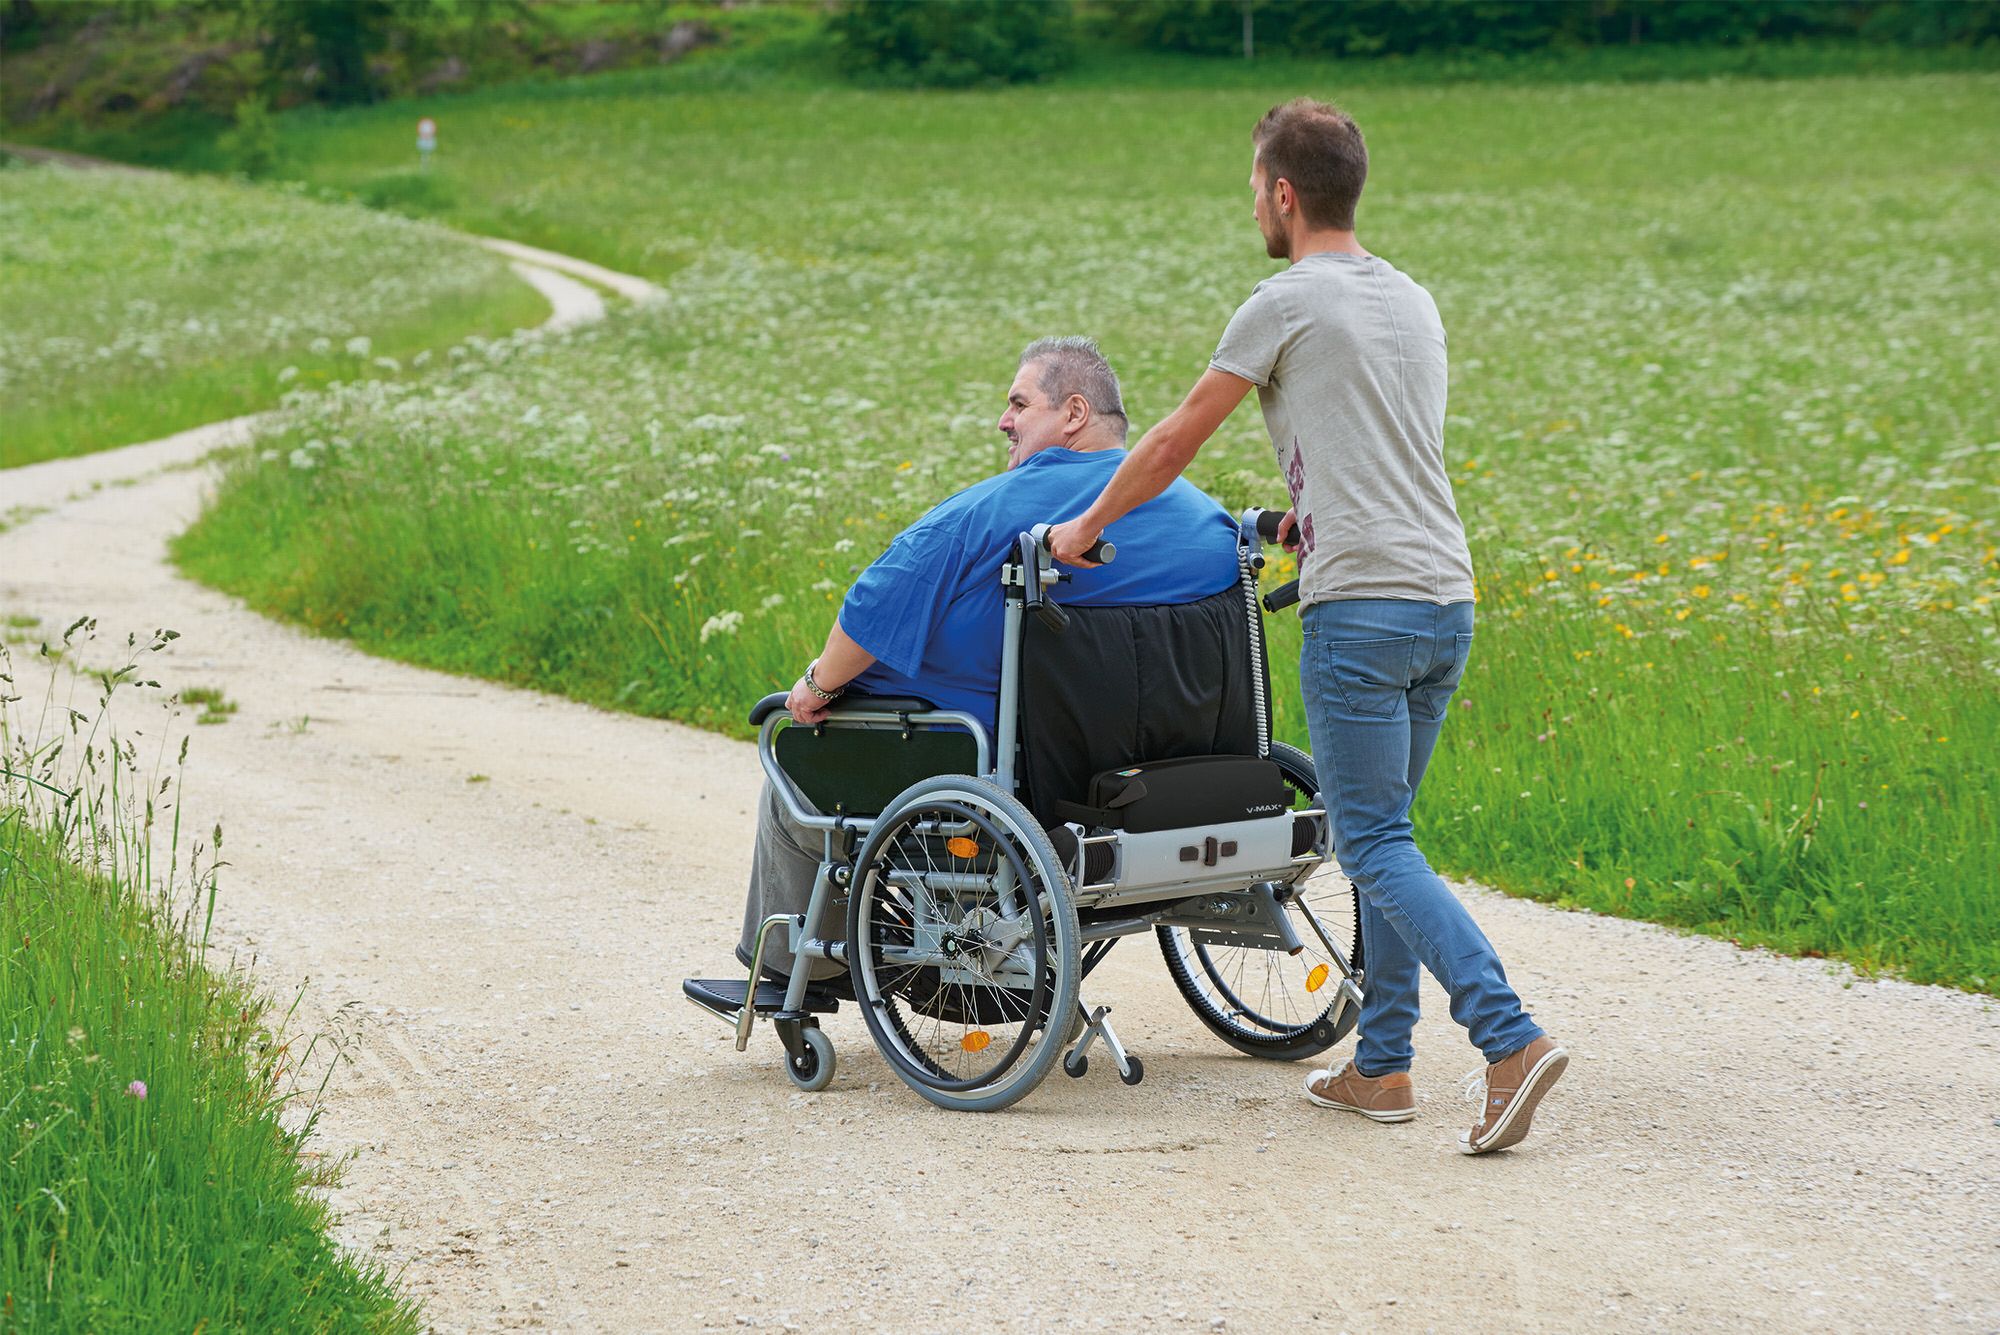 Das Bild zeigt einen adipösen Mann, der in seinem XXL-Rollstuhl von einem anderen Mann geschoben wird. Um die Begleitperson zu entlasten, wird eine Schiebe- und Bremshilfe für den Rollstuhl genutzt.